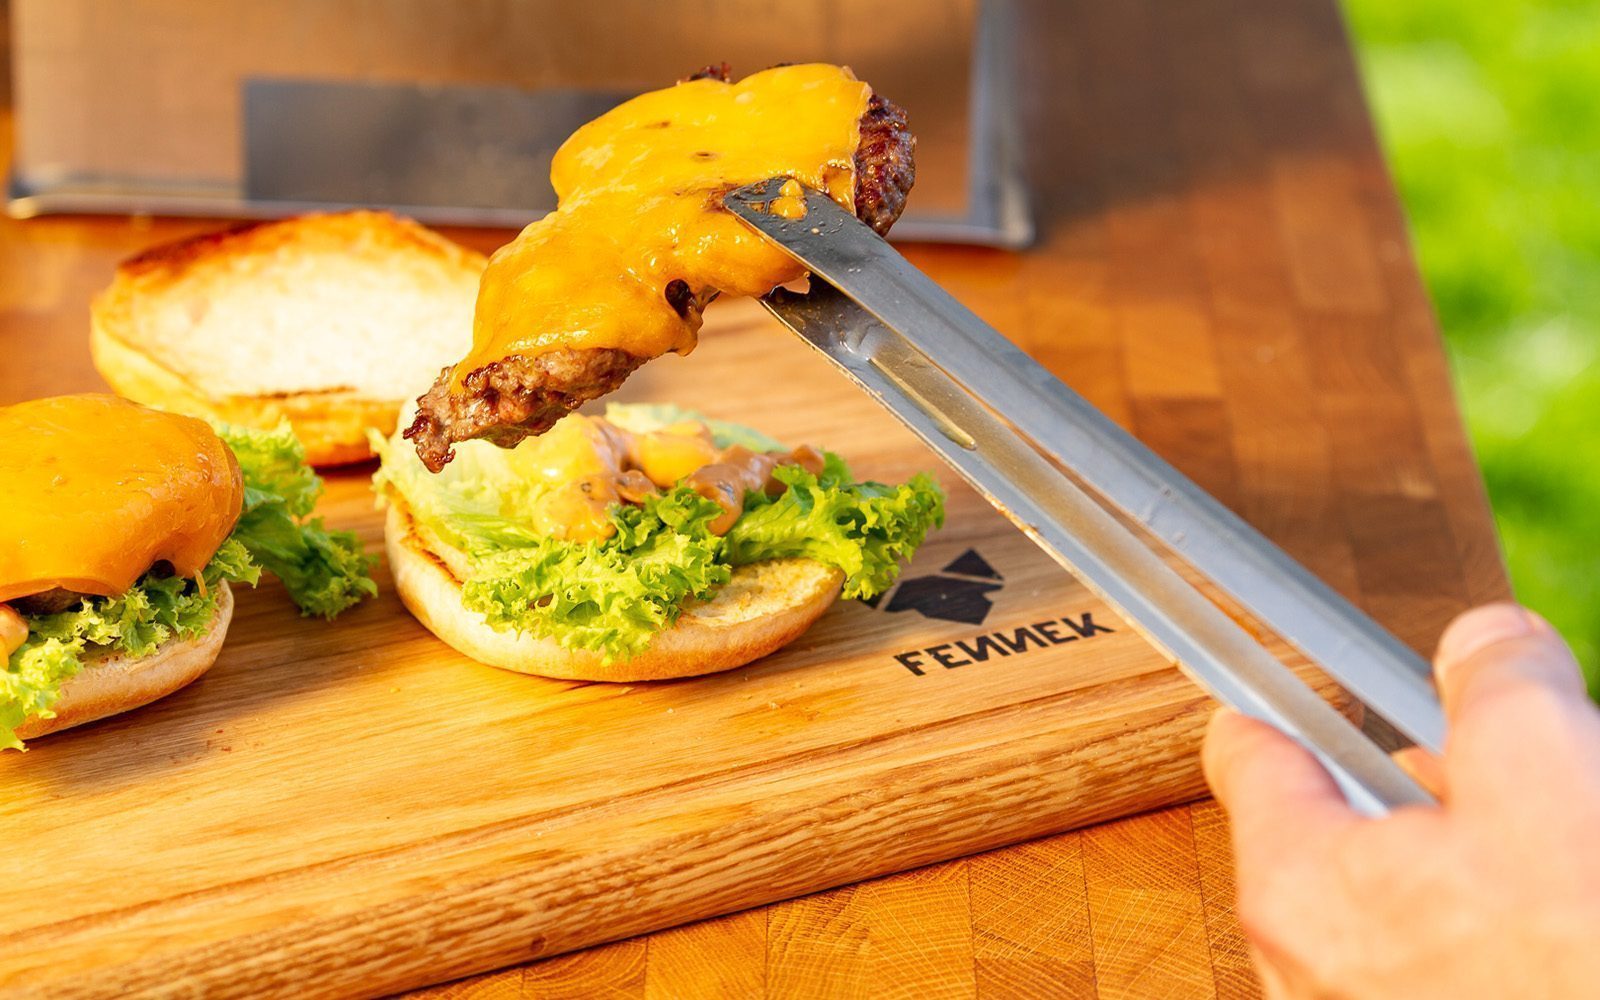 Mit Käse überbackenes Hamburger Patty wird mit Grillzange aus Edelstahl auf ein Brötchen gelegt, darunter ein Holzbrett mit Fennek Logo-Branding.